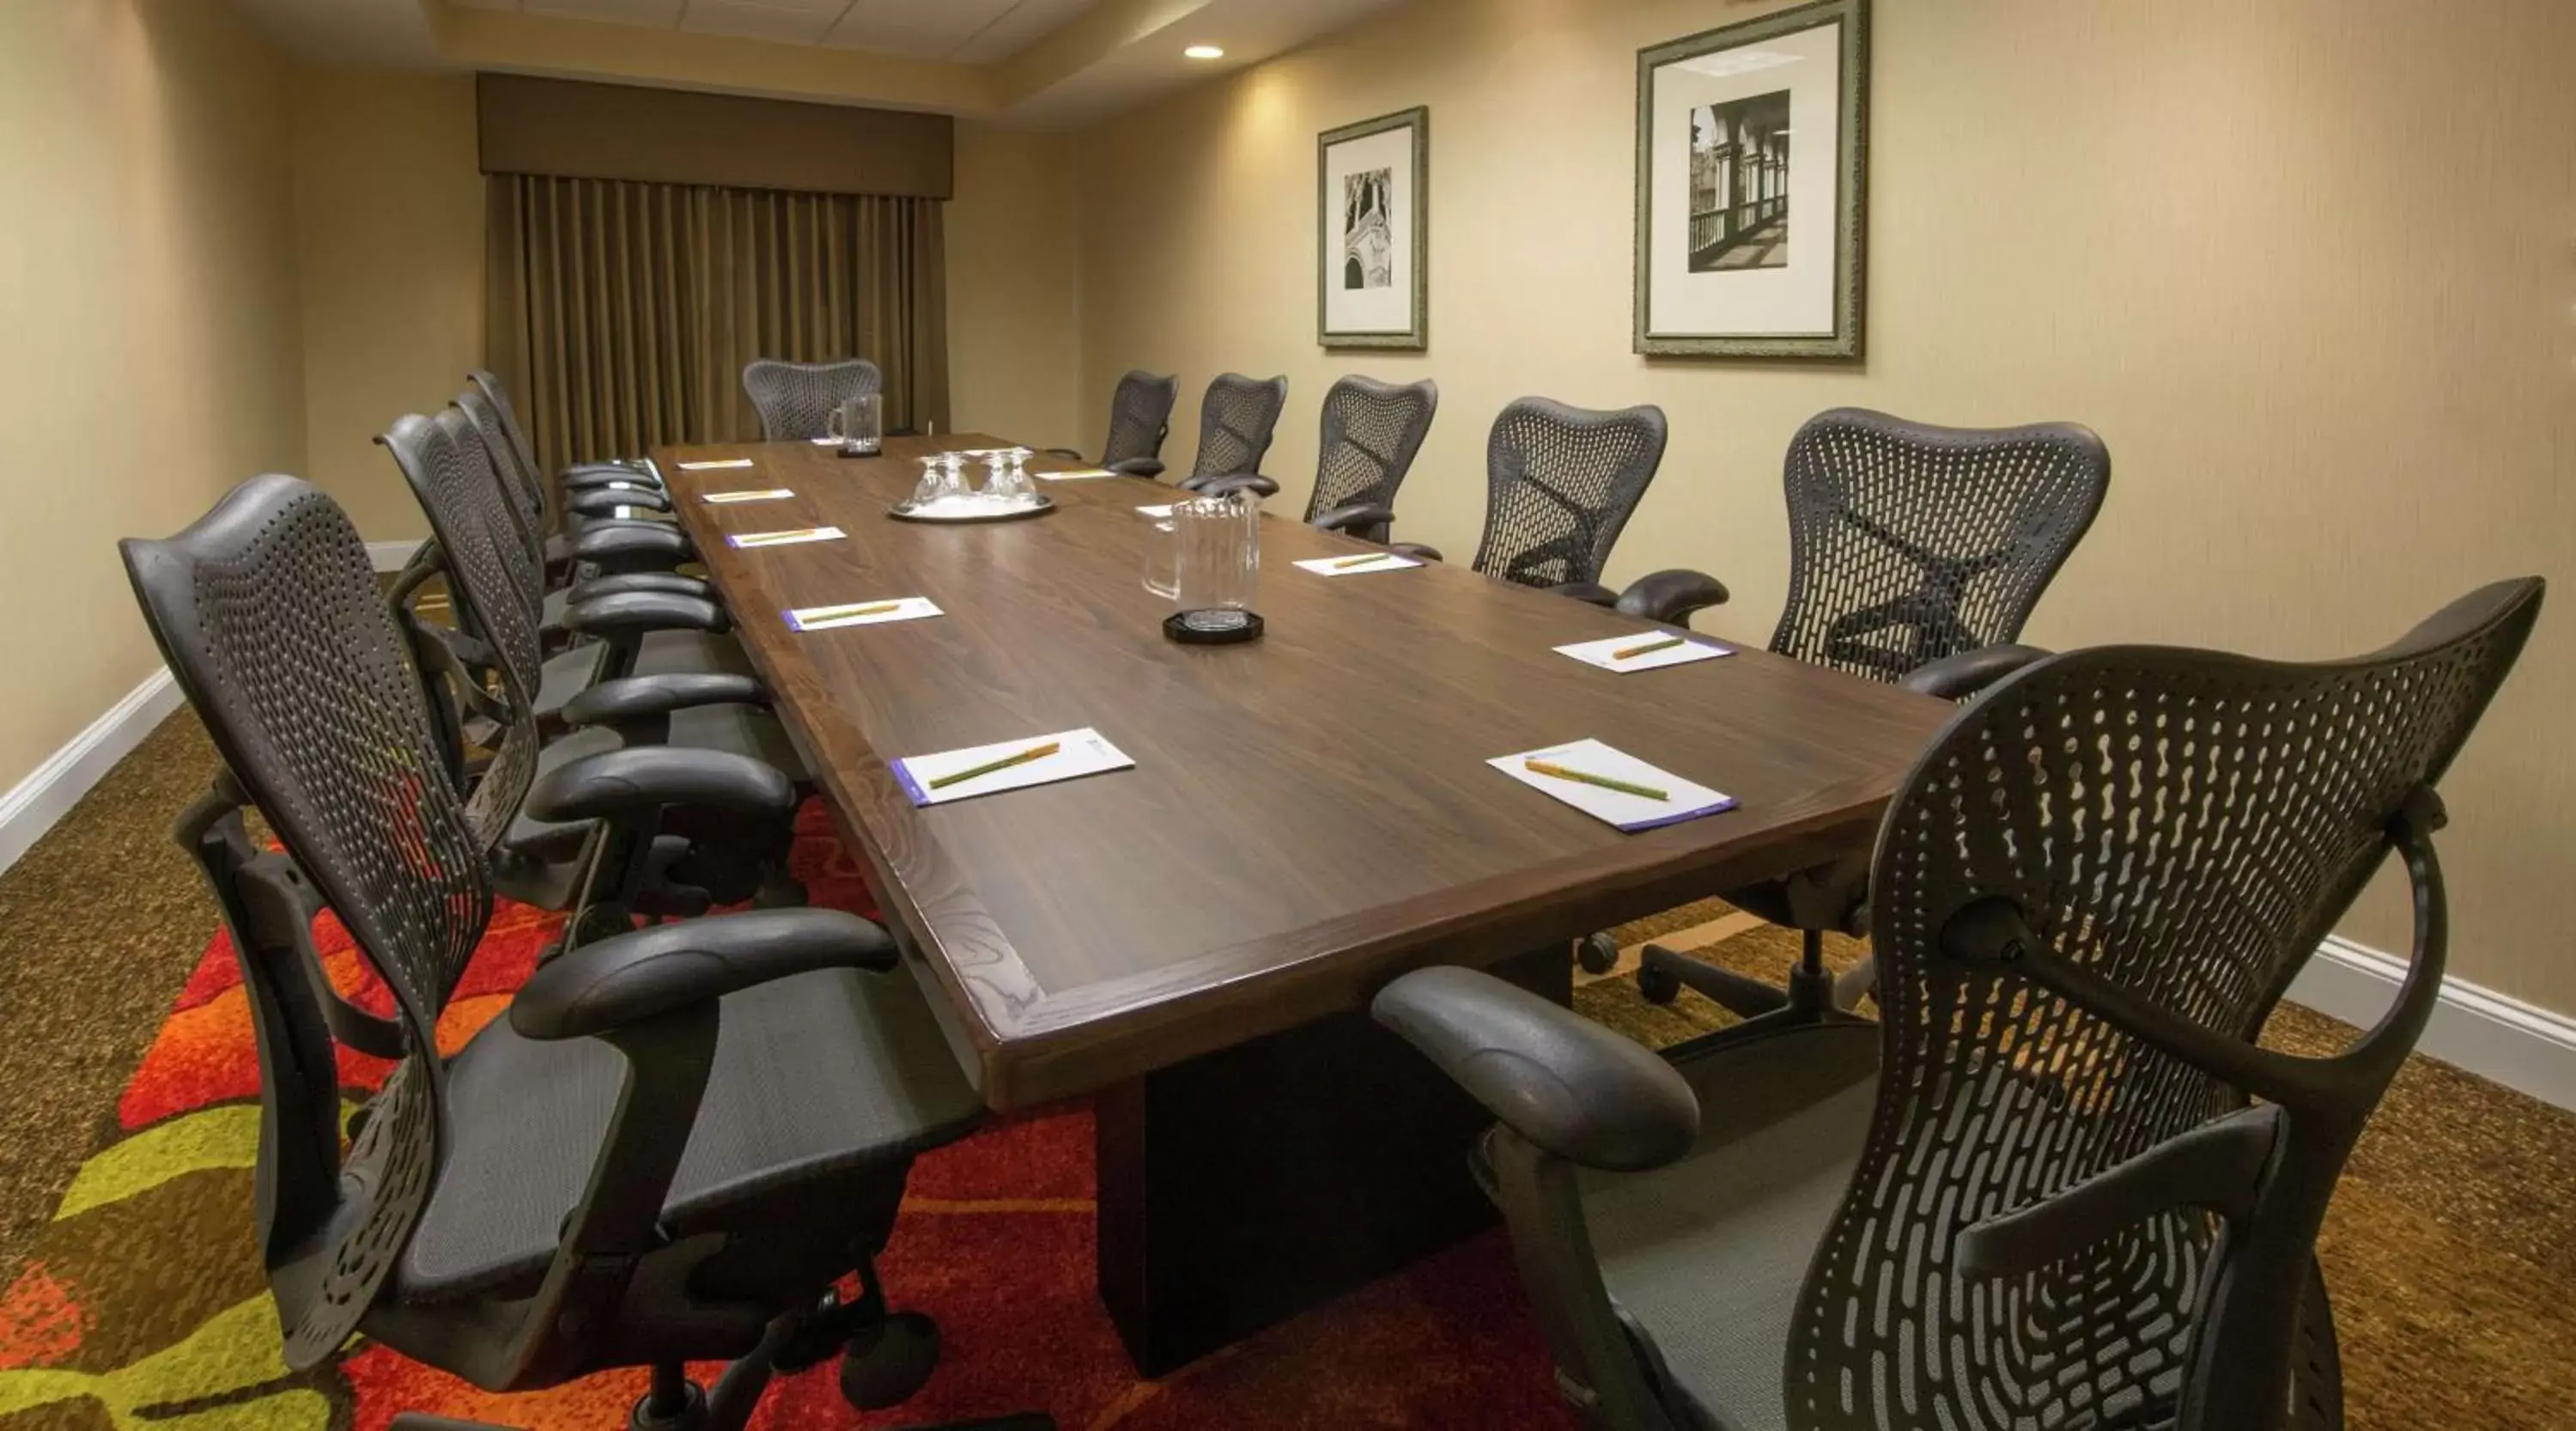 Meeting/conference room in Hilton Garden Inn Macon/Mercer University